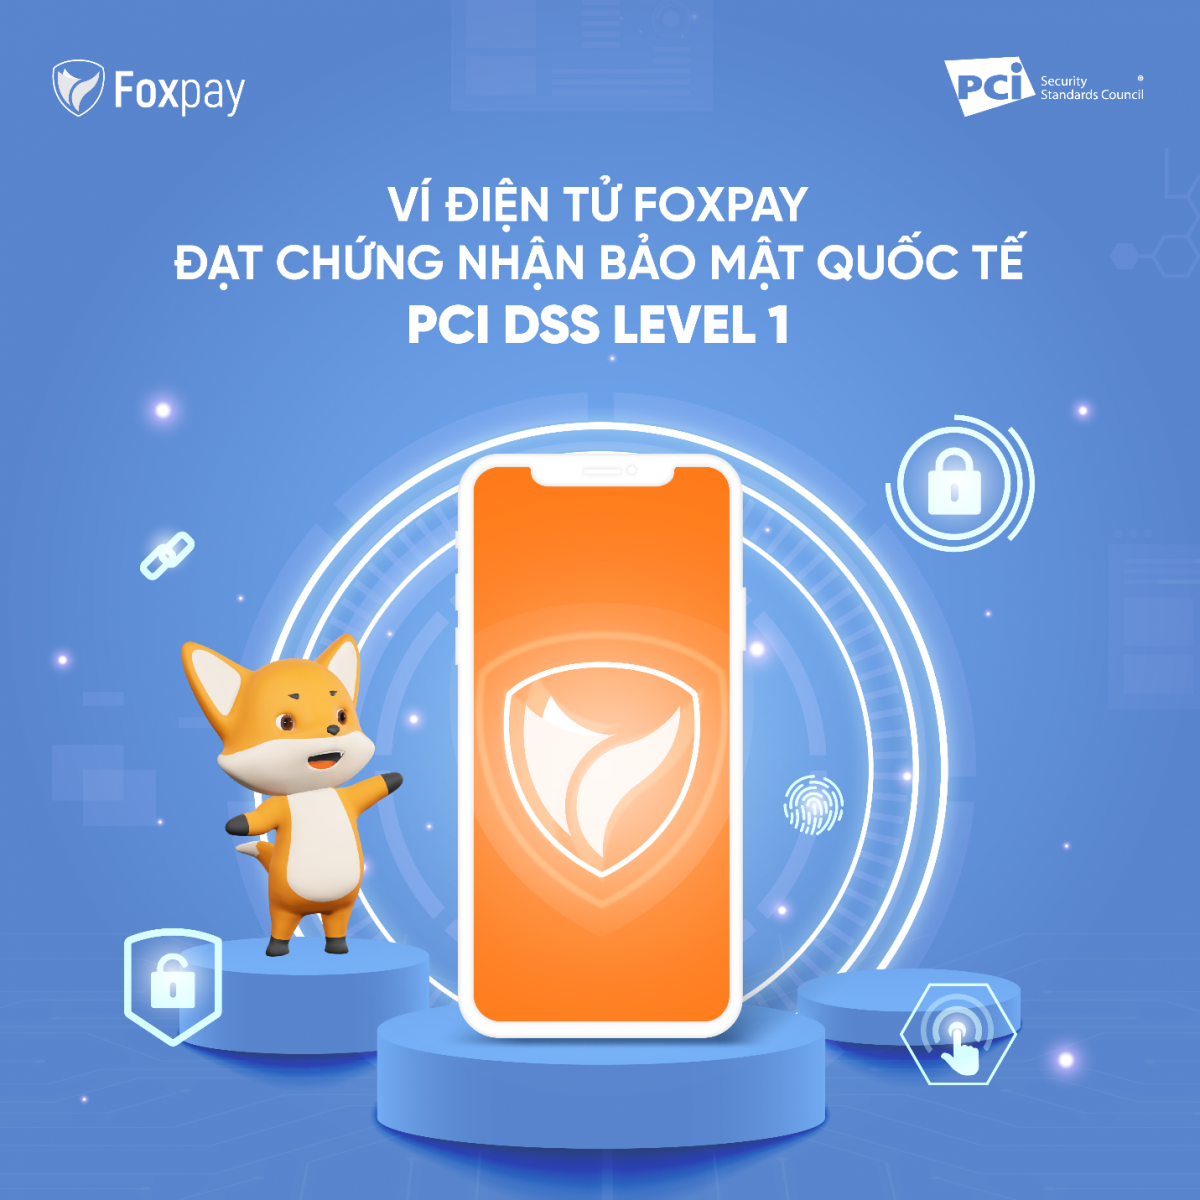 FOXPAY - Ví điện tử của FPT Telecom